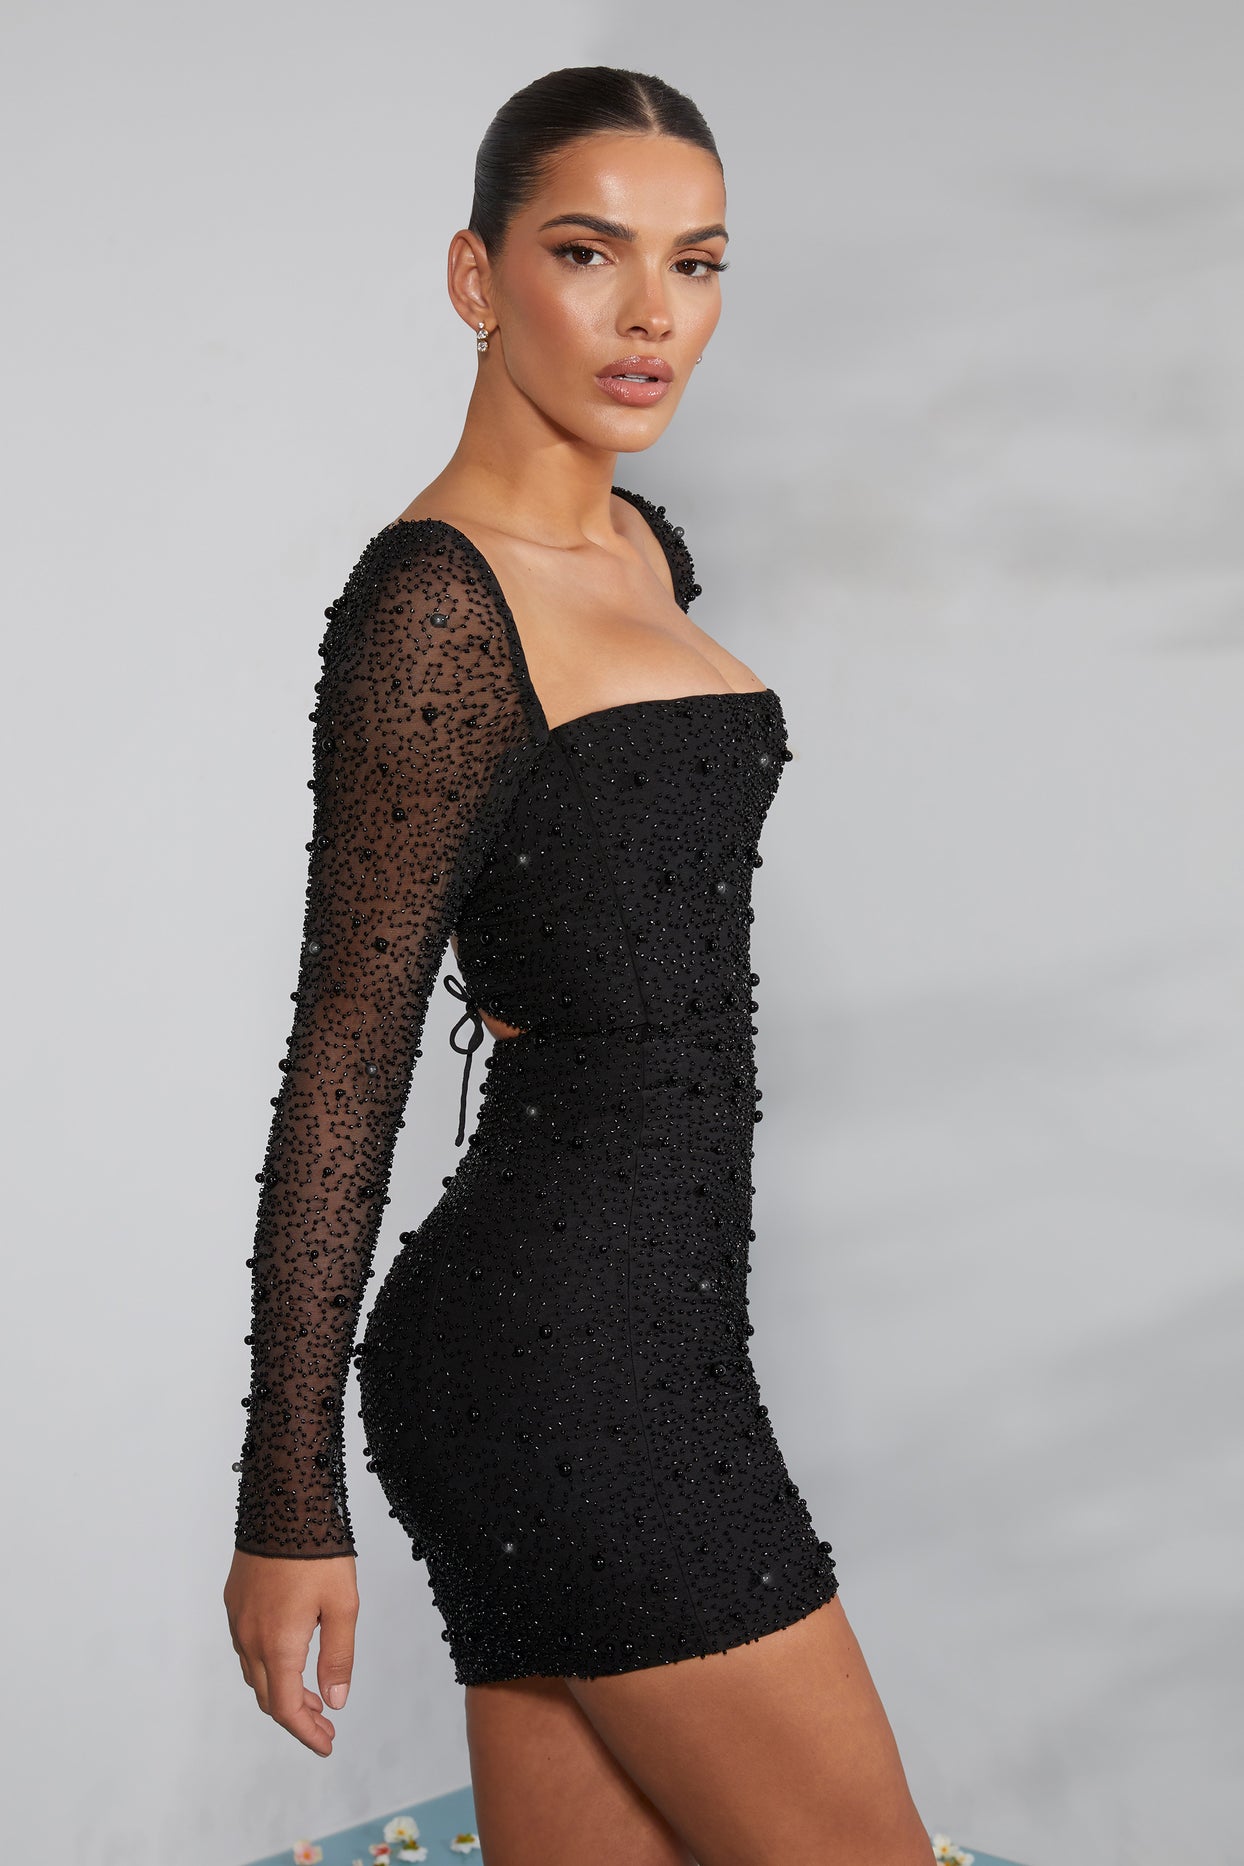 Czarna, zdobiona gorsetowa sukienka mini z długim rękawem